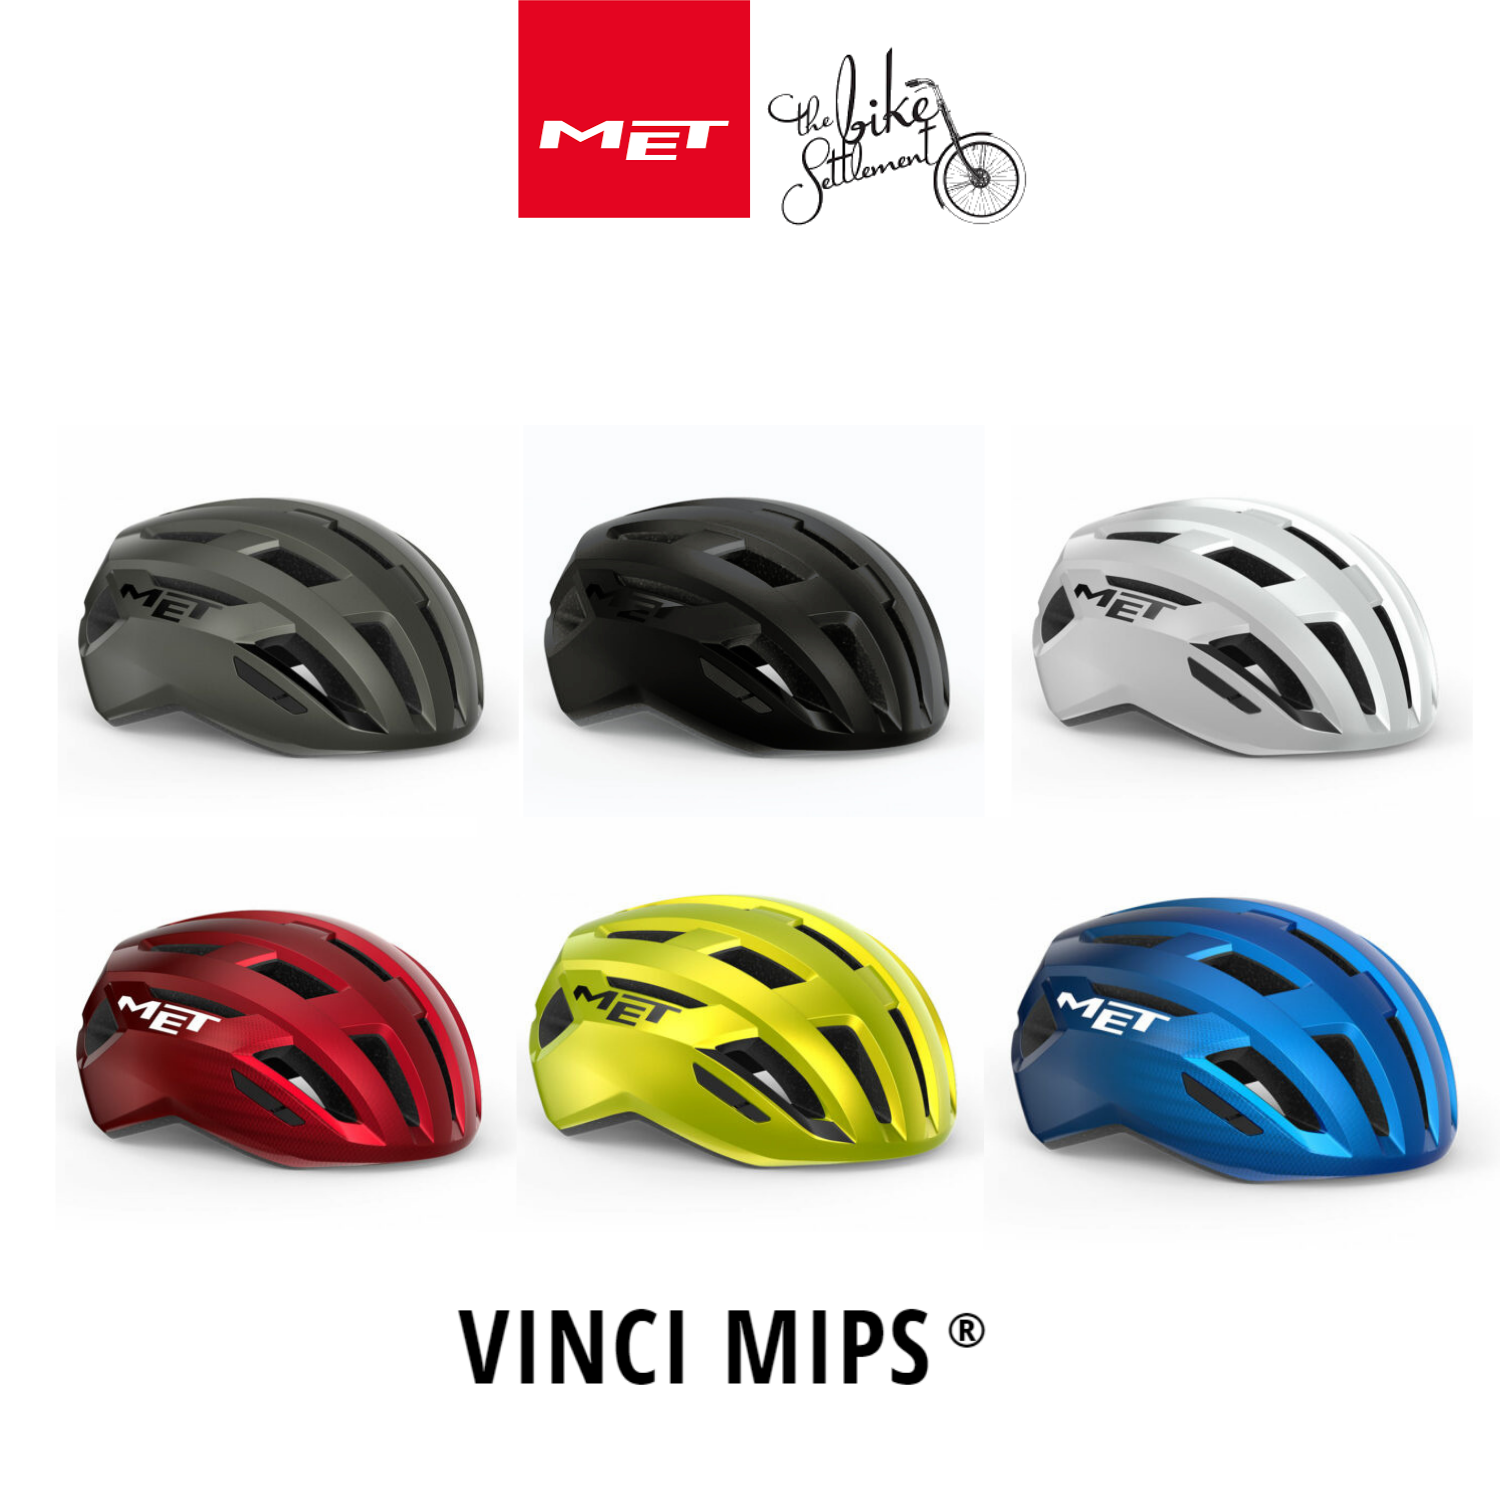 Details about   MET Vinci MIPS Road Bike Cycle Helmet Cycling 2021 